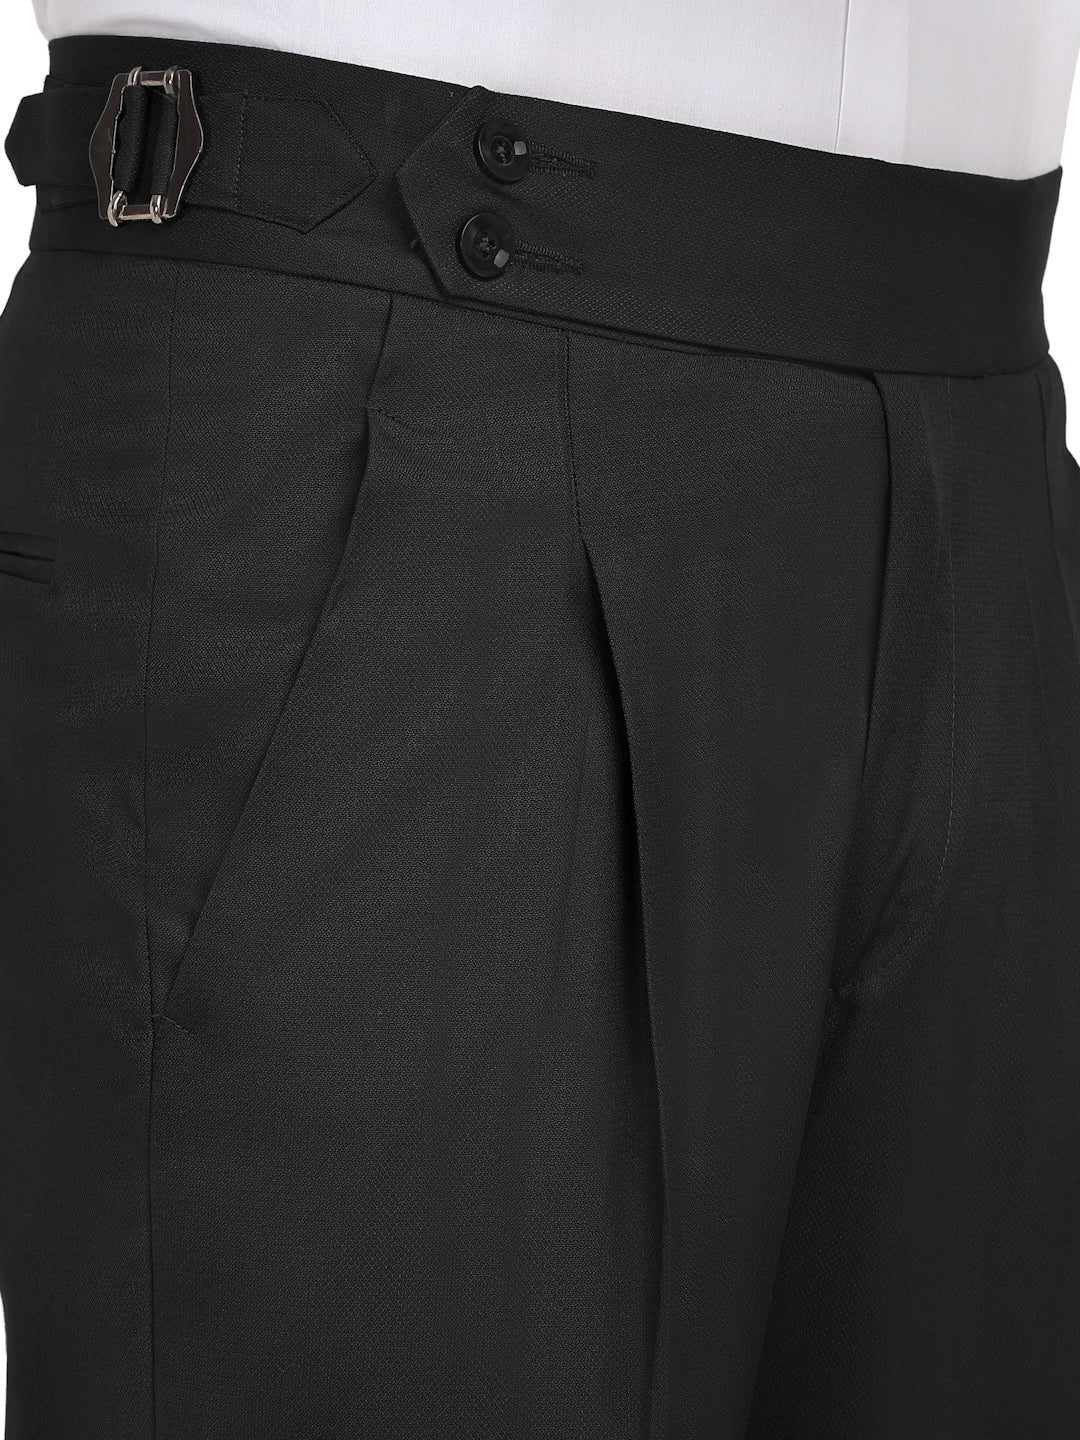 Klotthe Men's Slim Fit Formal Trouser-Black